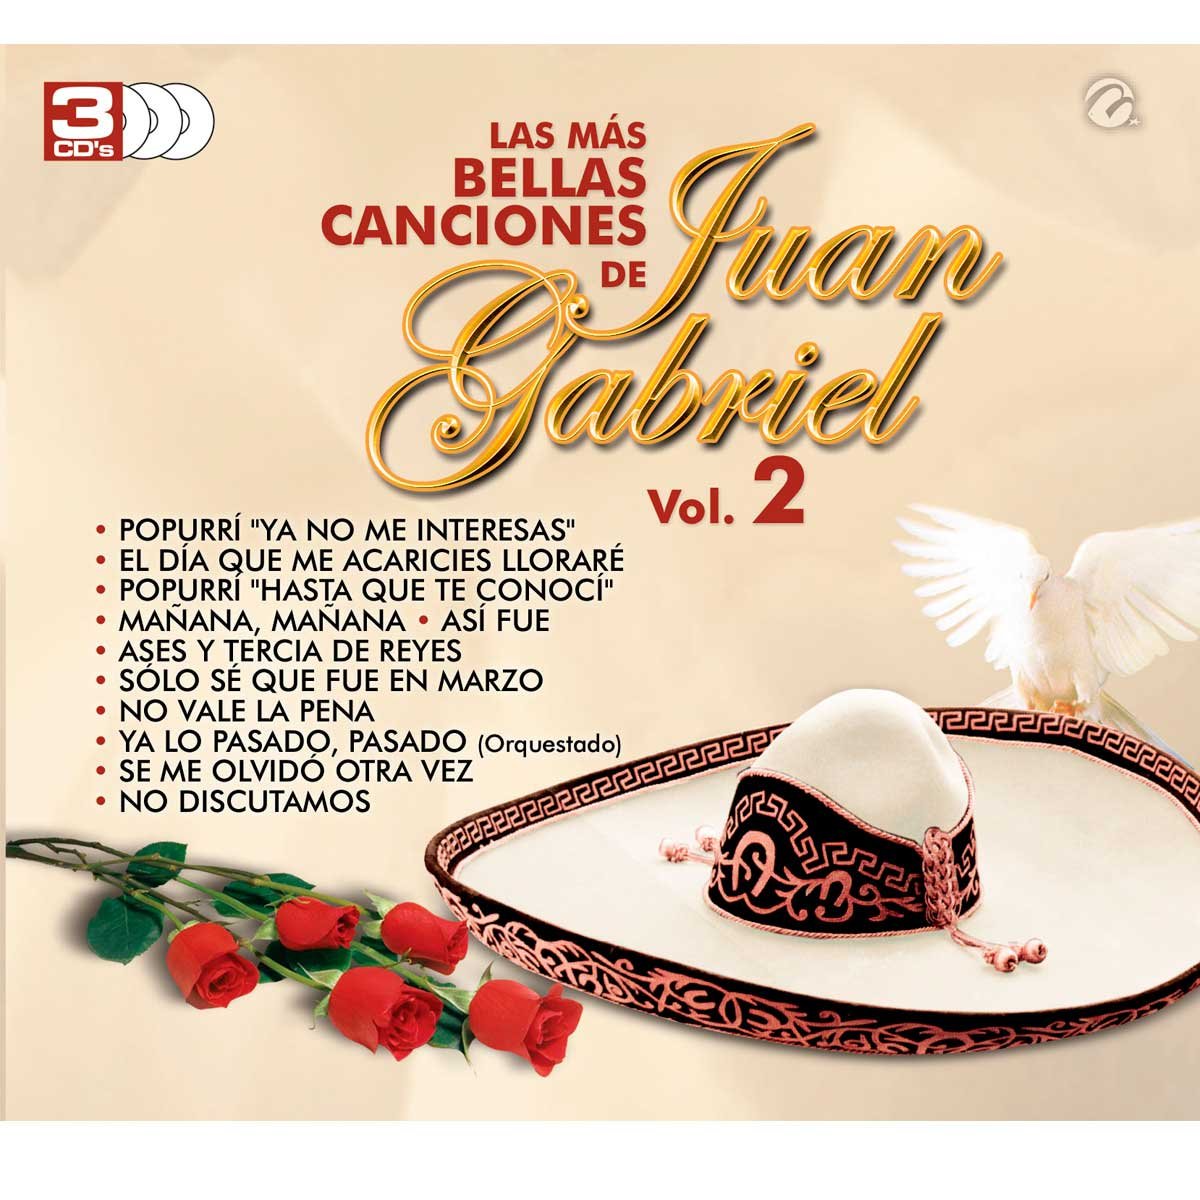 3 Cds Varios las Más Bellas Canciones de Juan Gabriel